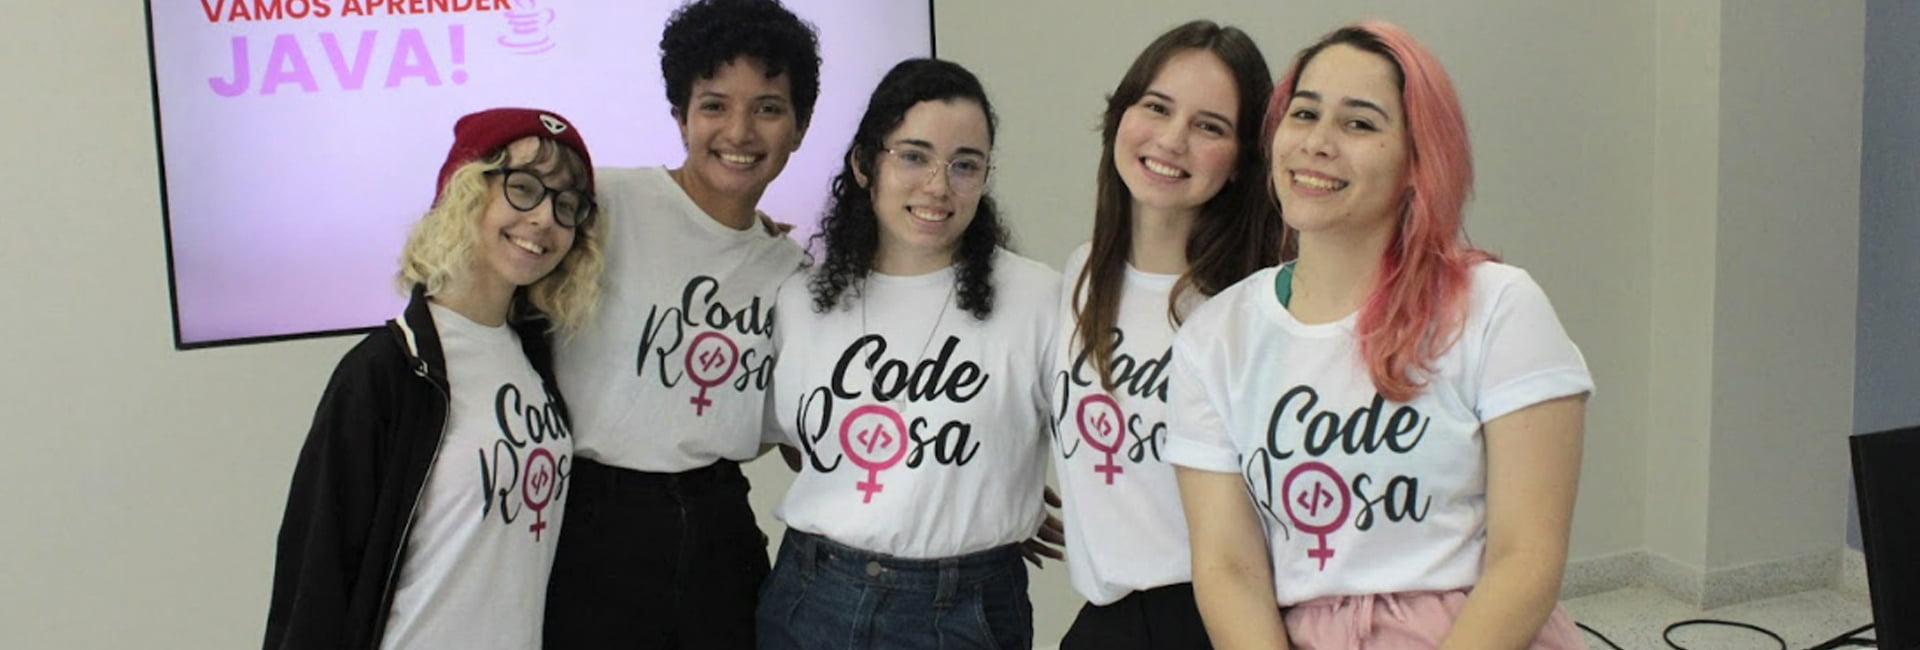 CodeRosa; Projeto de extensão da Unifacisa destaca avanços, desafios e empoderamento feminino na tecnologia